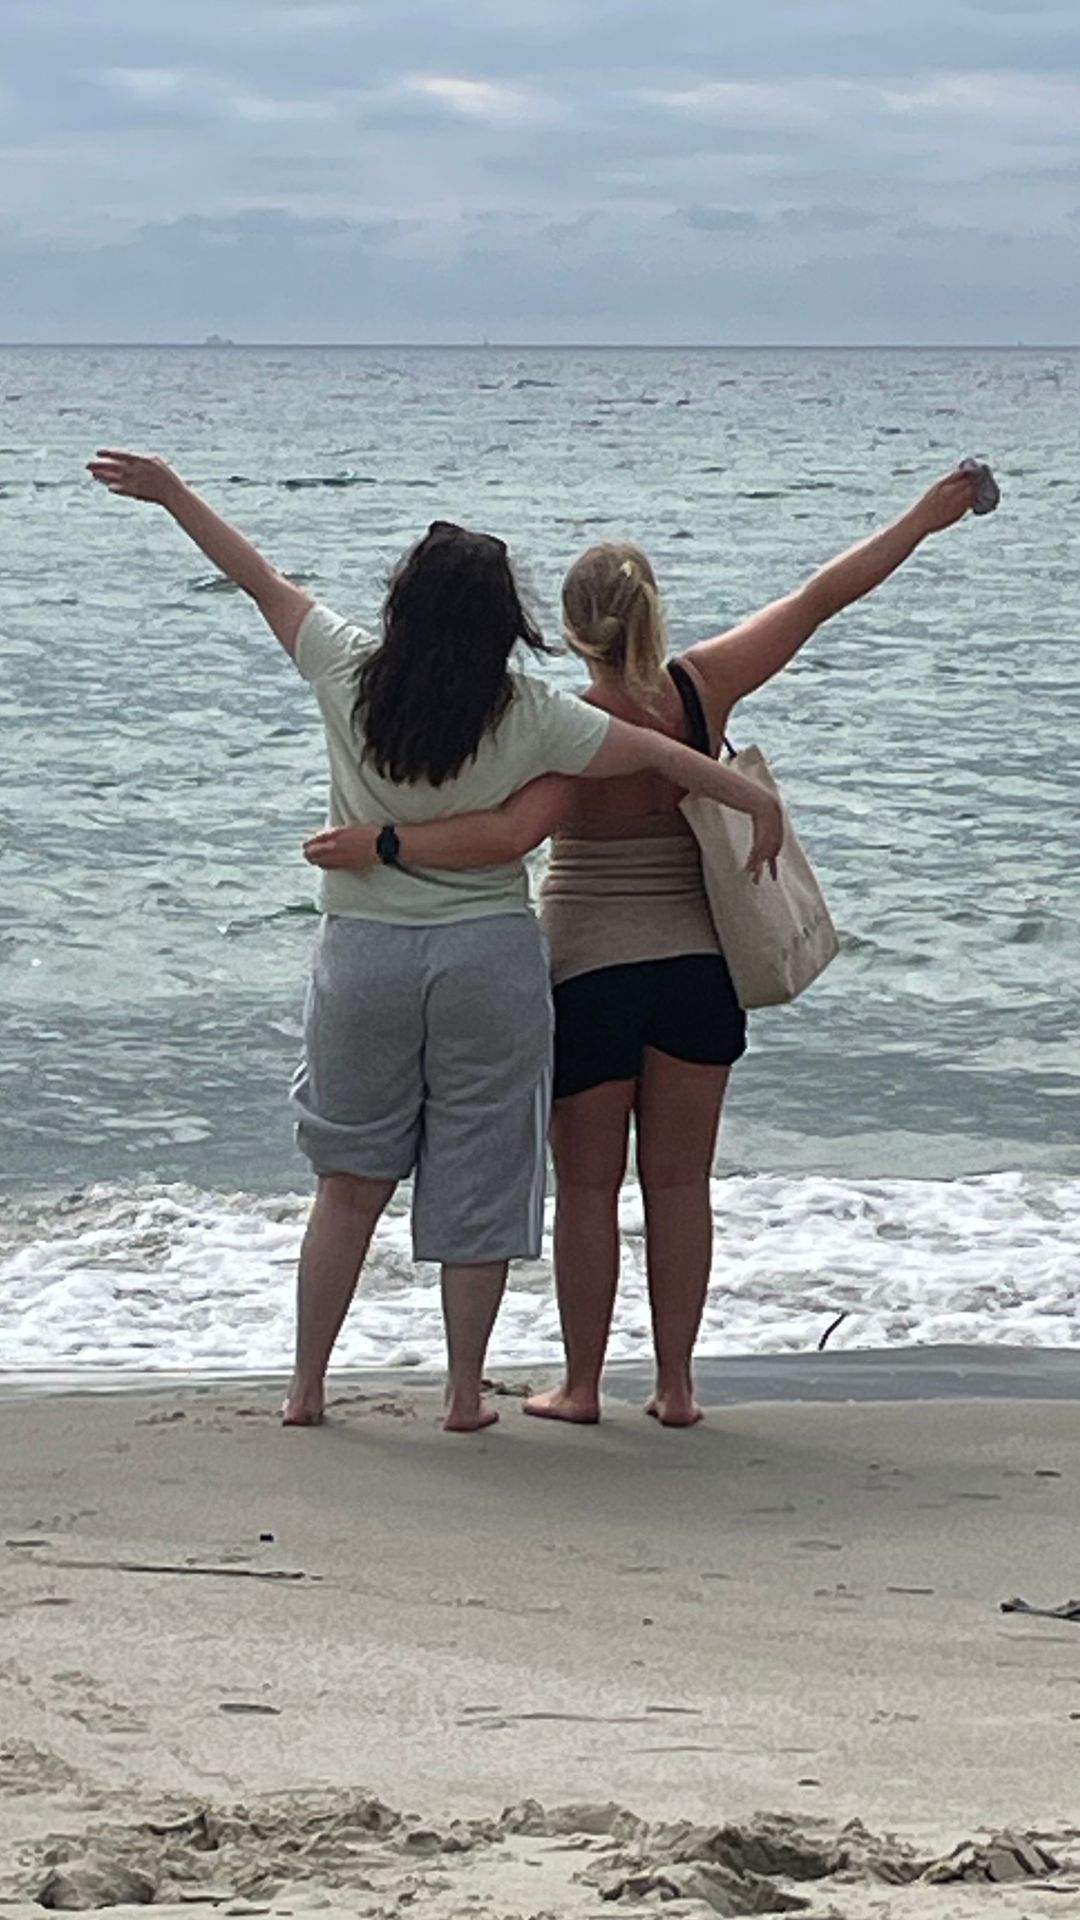 Tamarin med kvinnelig assistent på stranden. De holder rundt hverandre med den ene armen og har den andre i været. Vi ser dem bakfra. Bølger i havet.